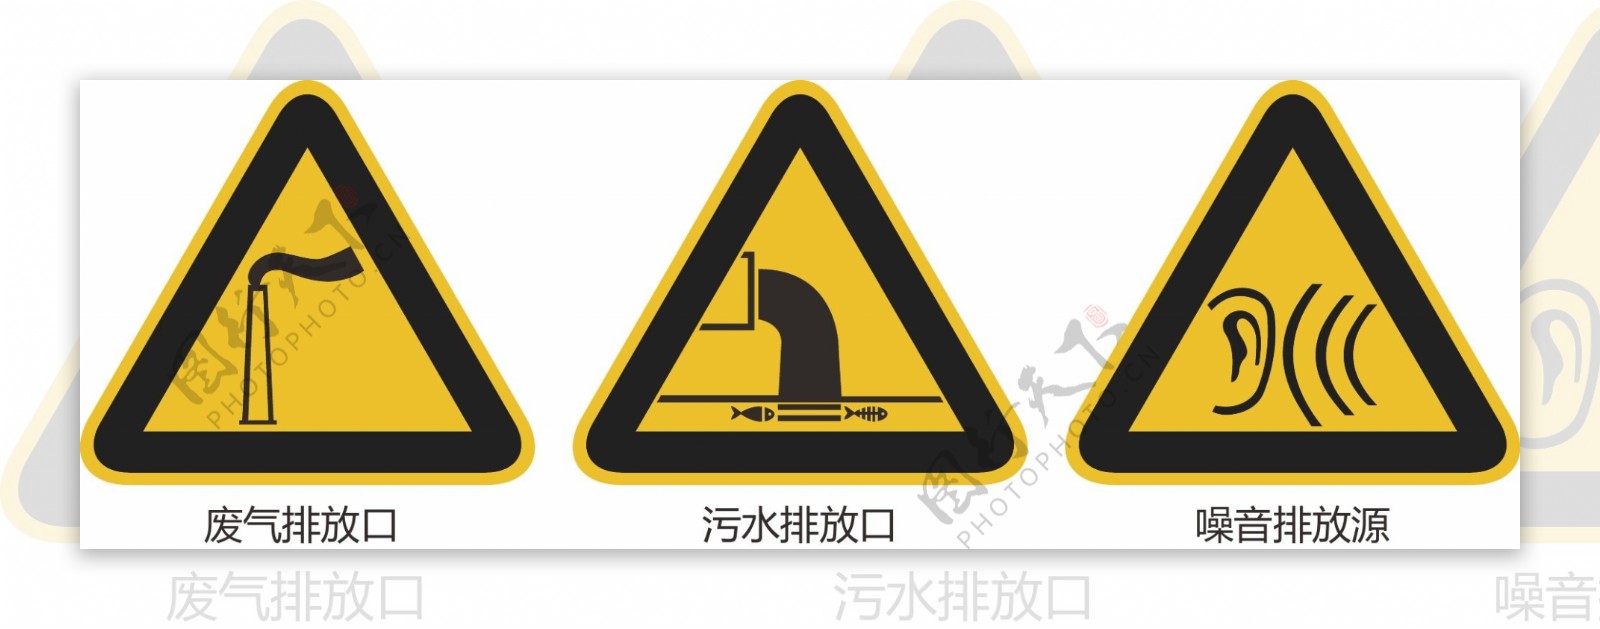 环保标志警告符号图片